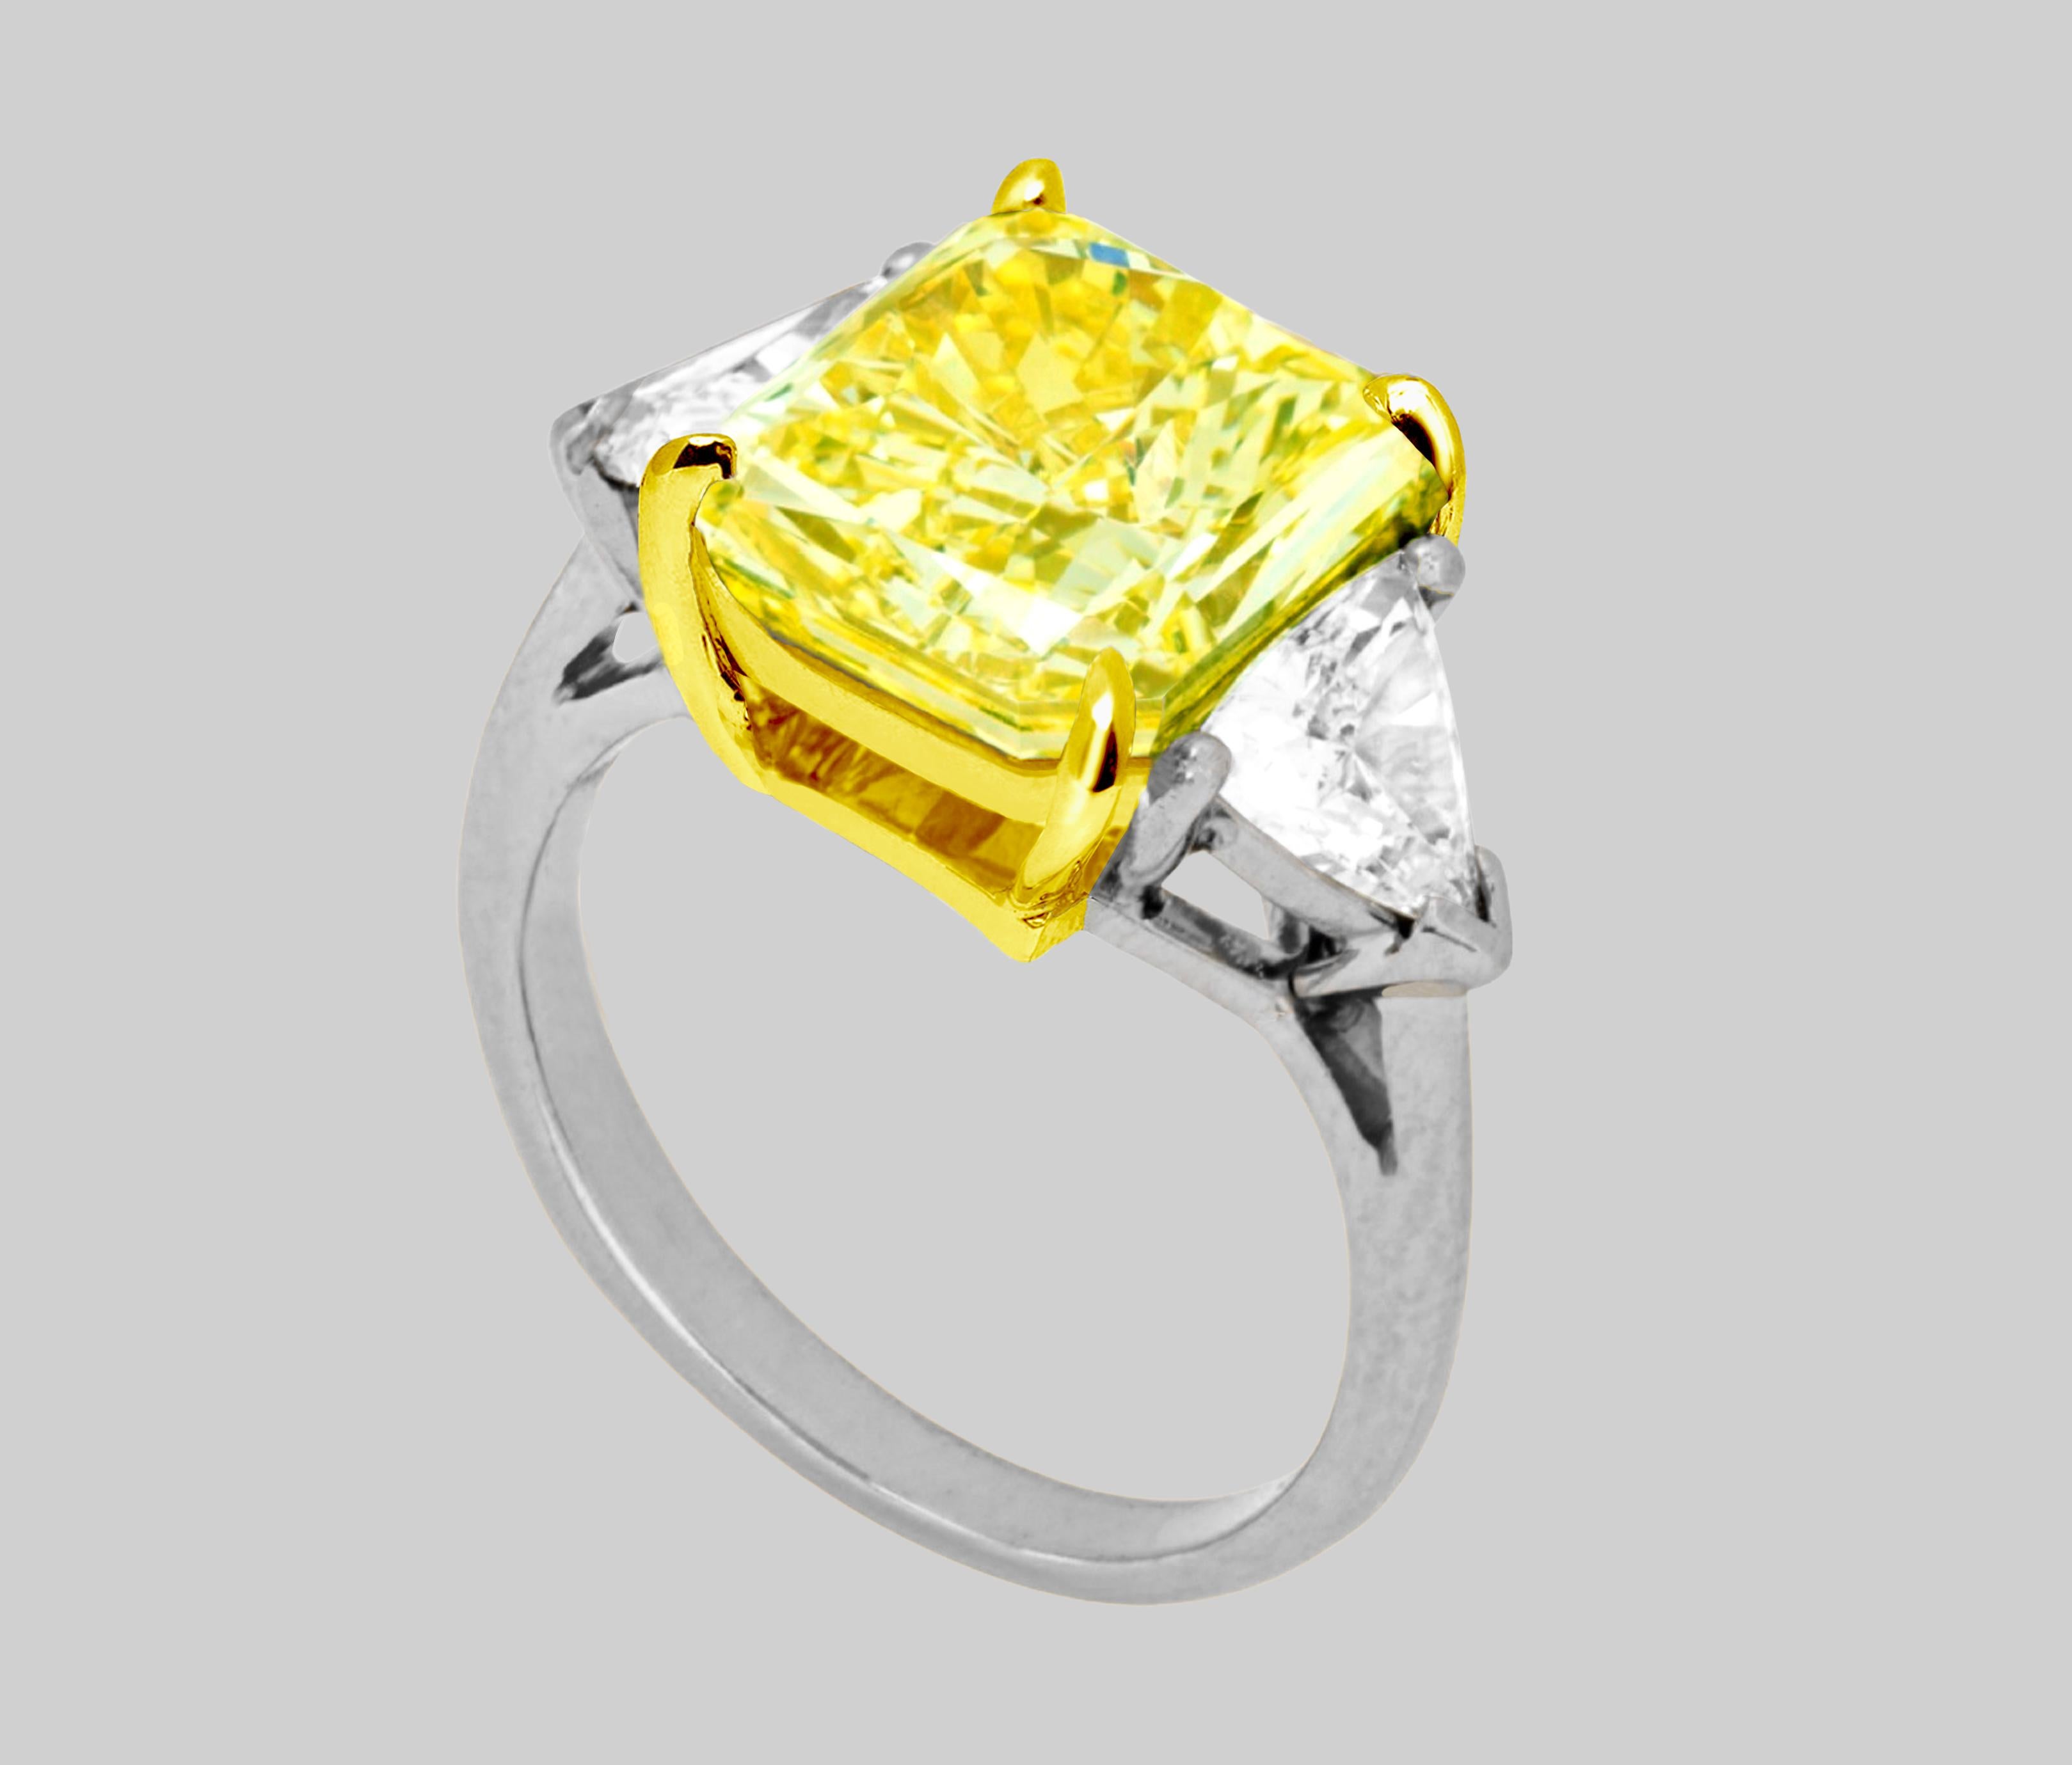 Absolument, voici une description de ce bijou exquis :

Cette magnifique bague présente un diamant central qui est un véritable chef-d'œuvre de la nature et de l'artisanat. La pierre principale est un diamant de taille radiant, d'un poids